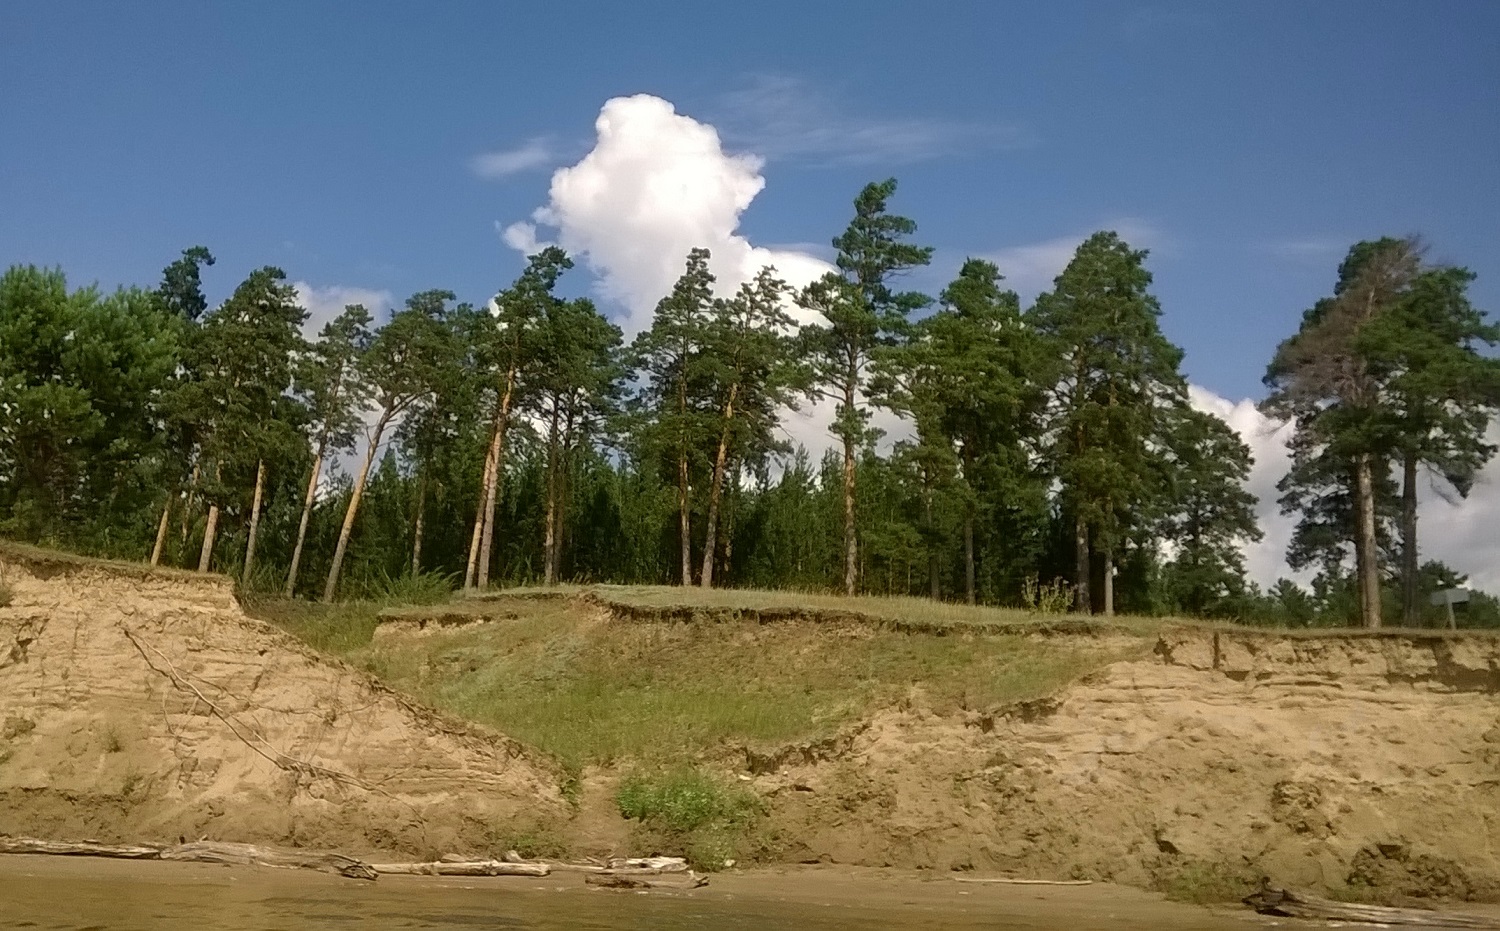 Работы по берегоукреплению посредством строительства капитальных сооружений на территории Новосибирской области не велись, хотя потребность в этом есть. Регион в 2018 году направлял заявку в Федеральное агентство водных ресурсов с целью привлечь&nbsp;финансирование из федерального бюджета